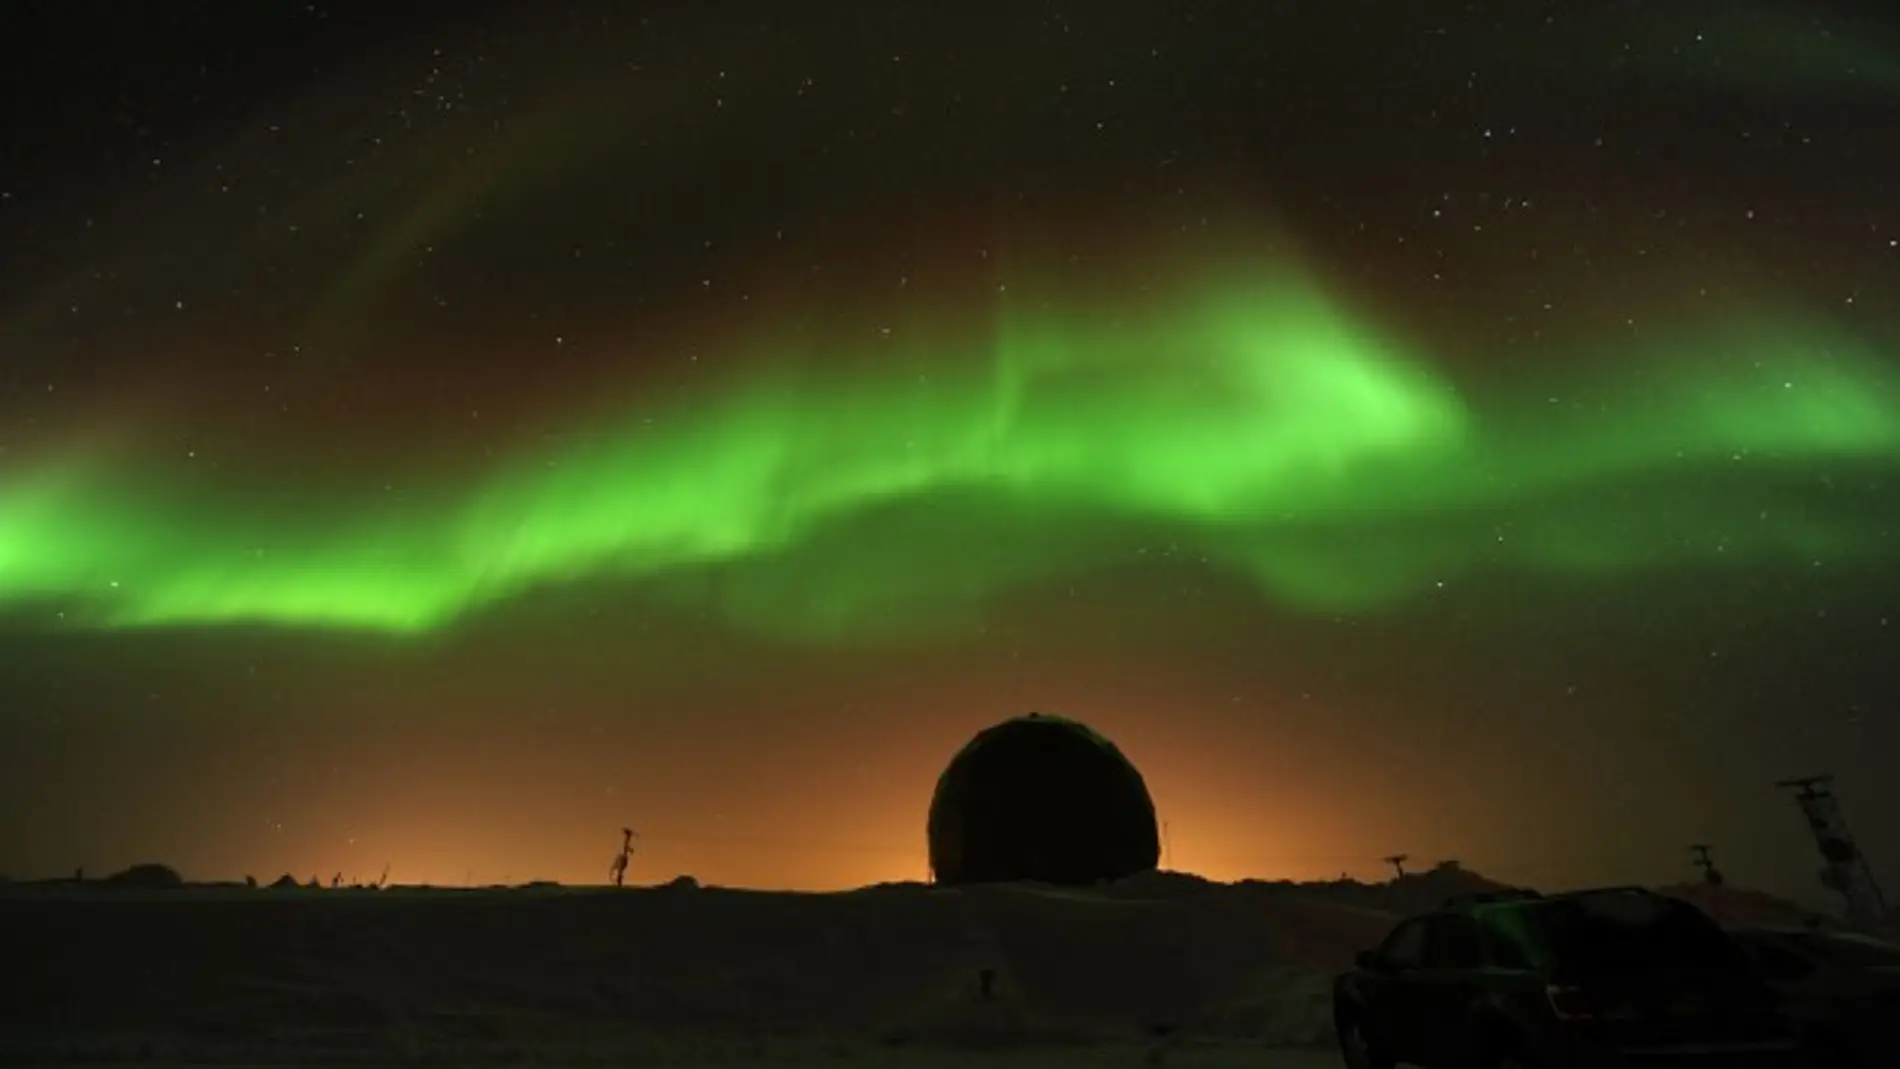 El bombardeo de partículas solares, al chocar con el campo magnético de la Tierra, genera las espectaculares auroras boreales